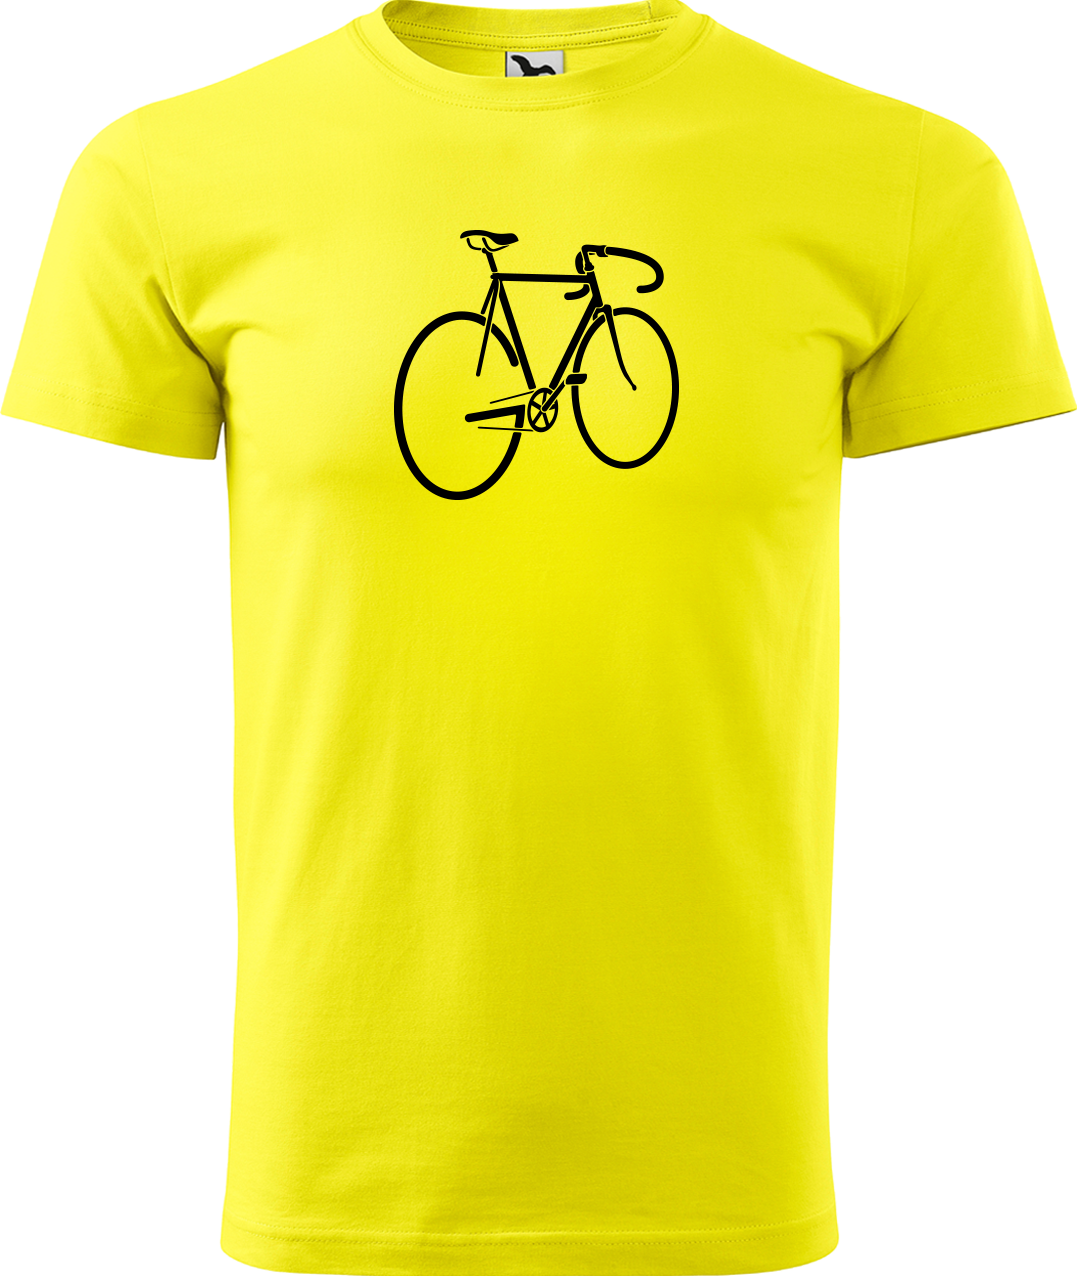 Pánské tričko s kolem - Pánské kolo Velikost: S, Barva: Žlutá (04)